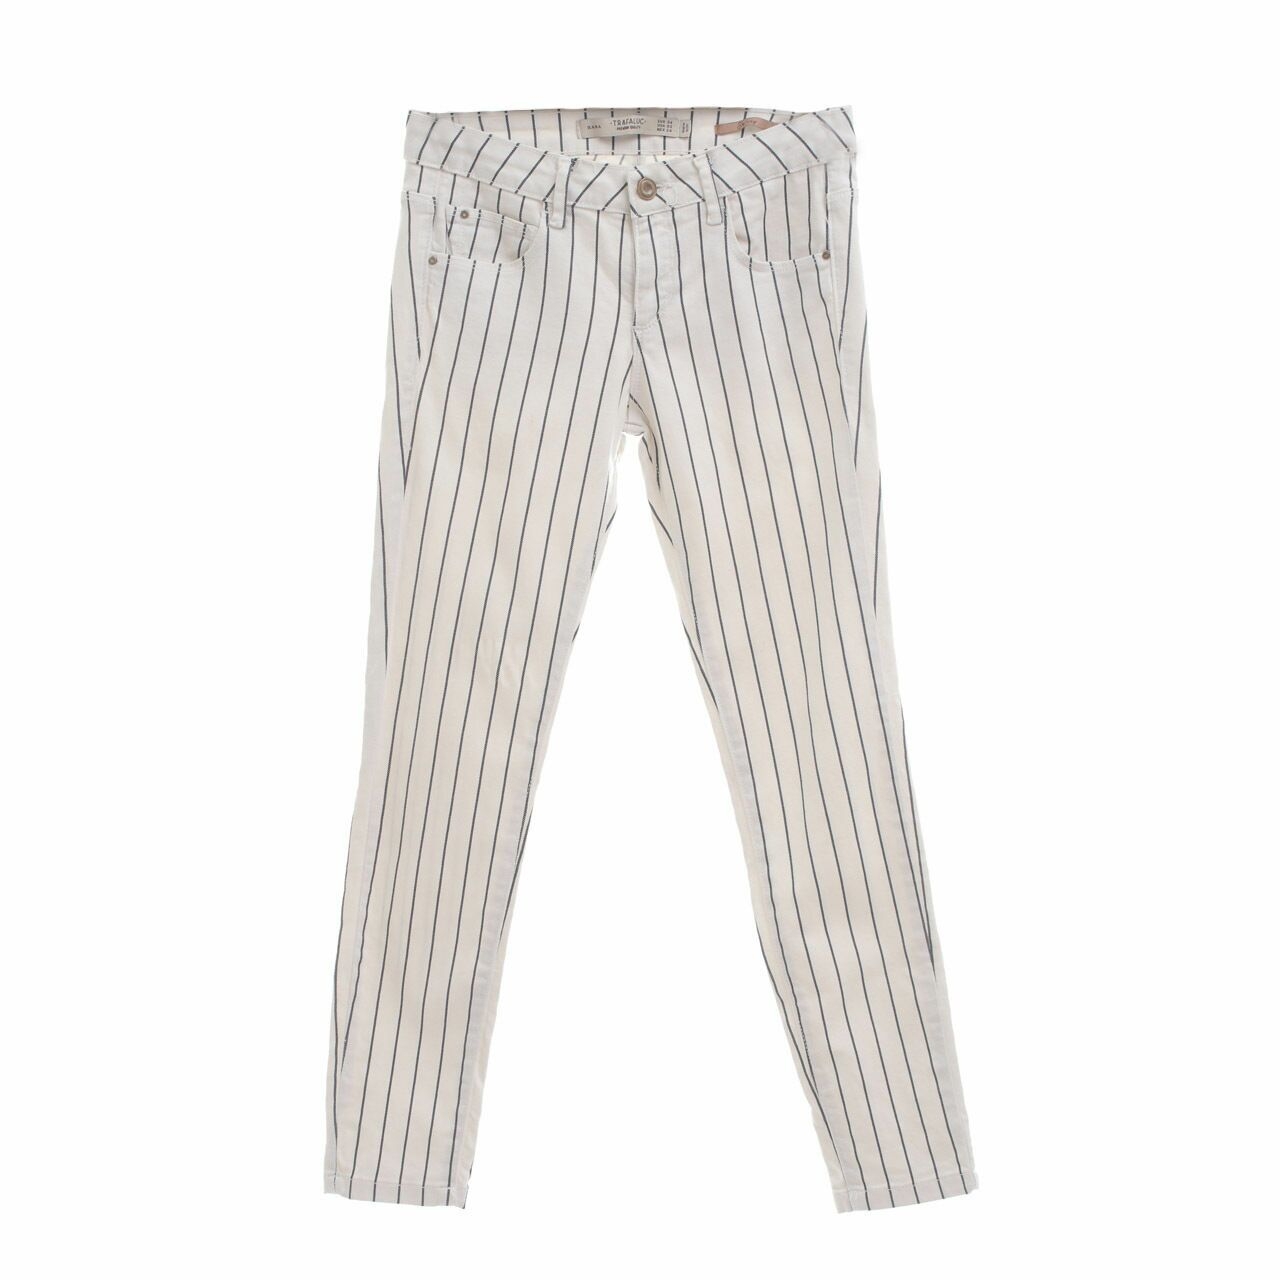 Zara White Stripes Long Pants